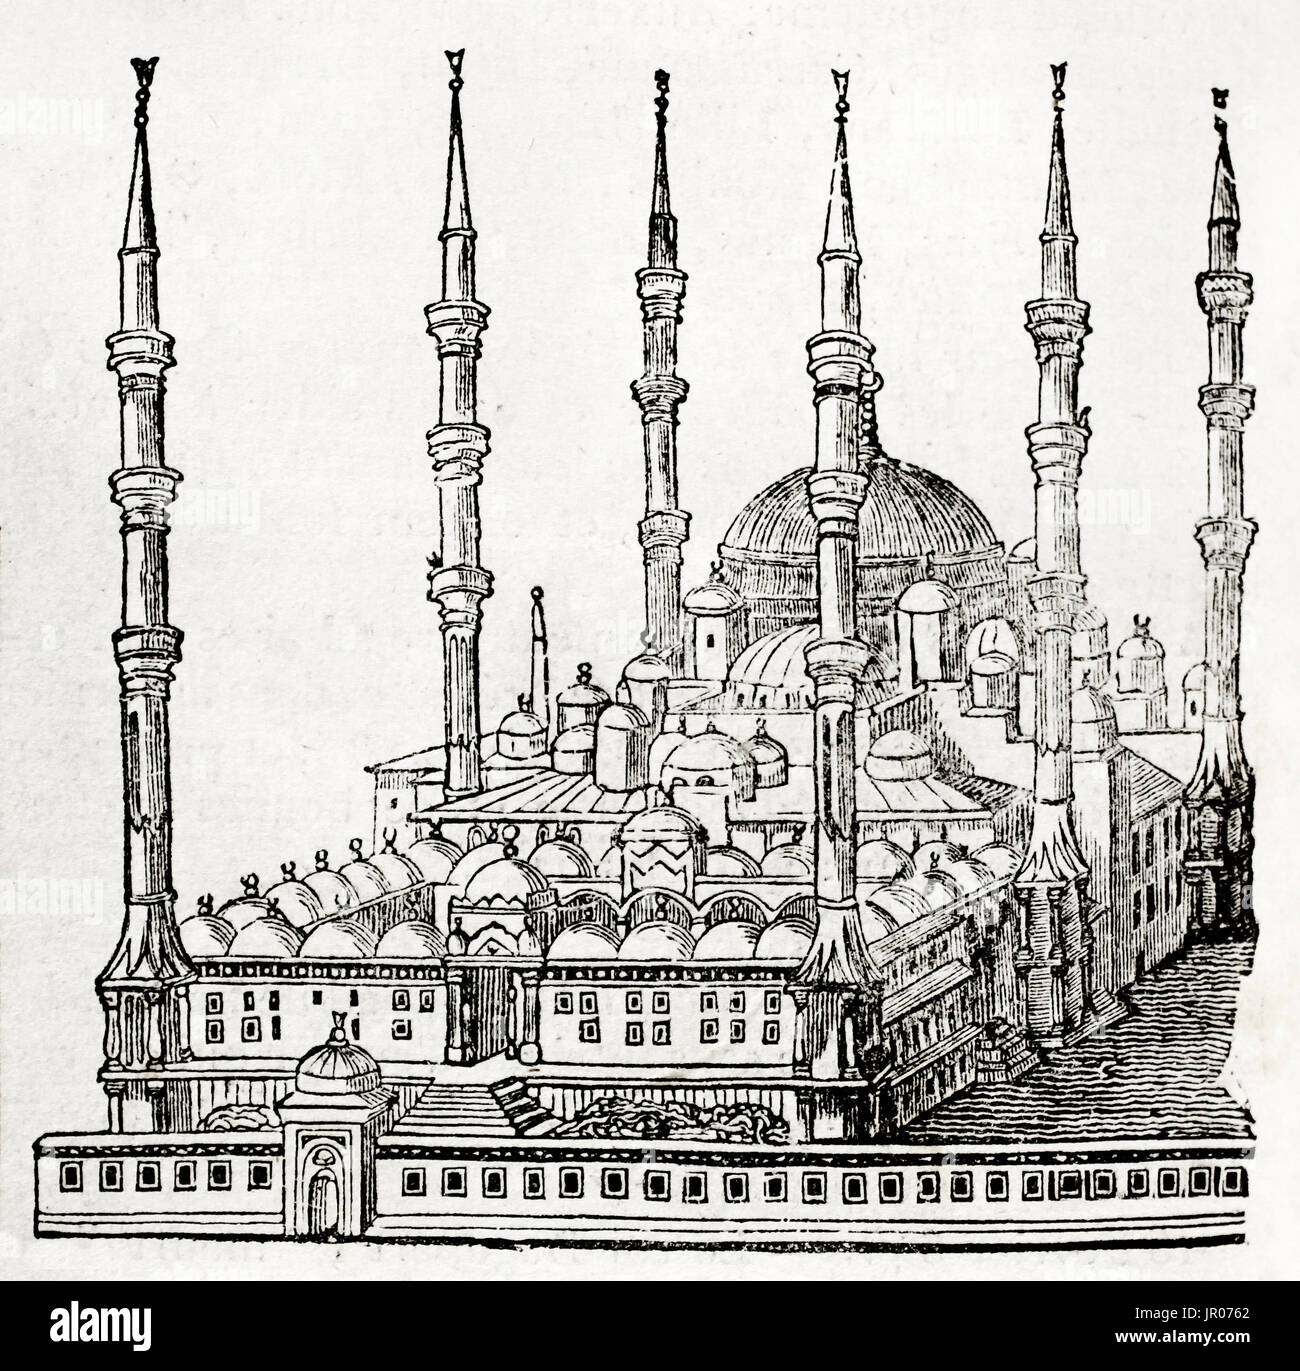 Ilustración de la antigua mezquita del Sultan Ahmed, Estambul. De autor desconocido, publicado en el Magasin pintoresco, 1833. Foto de stock